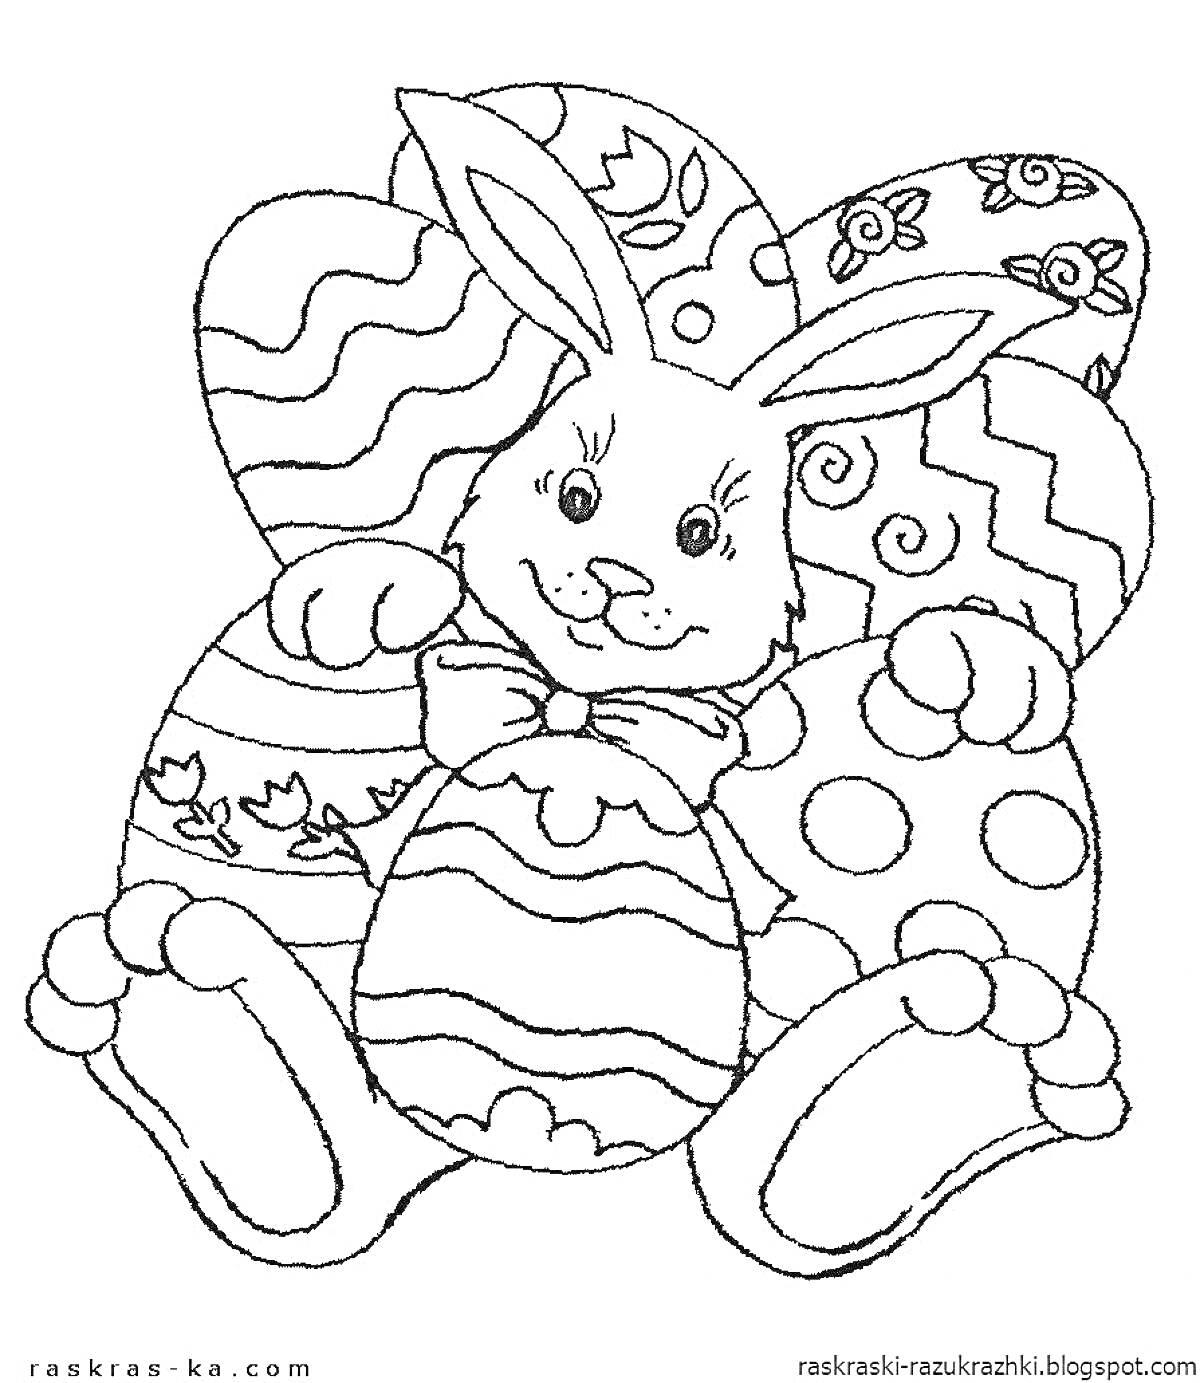 Раскраска Кролик с пасхальными яйцами. Кролик в центре, окружен большими украшенными яйцами с узорами.